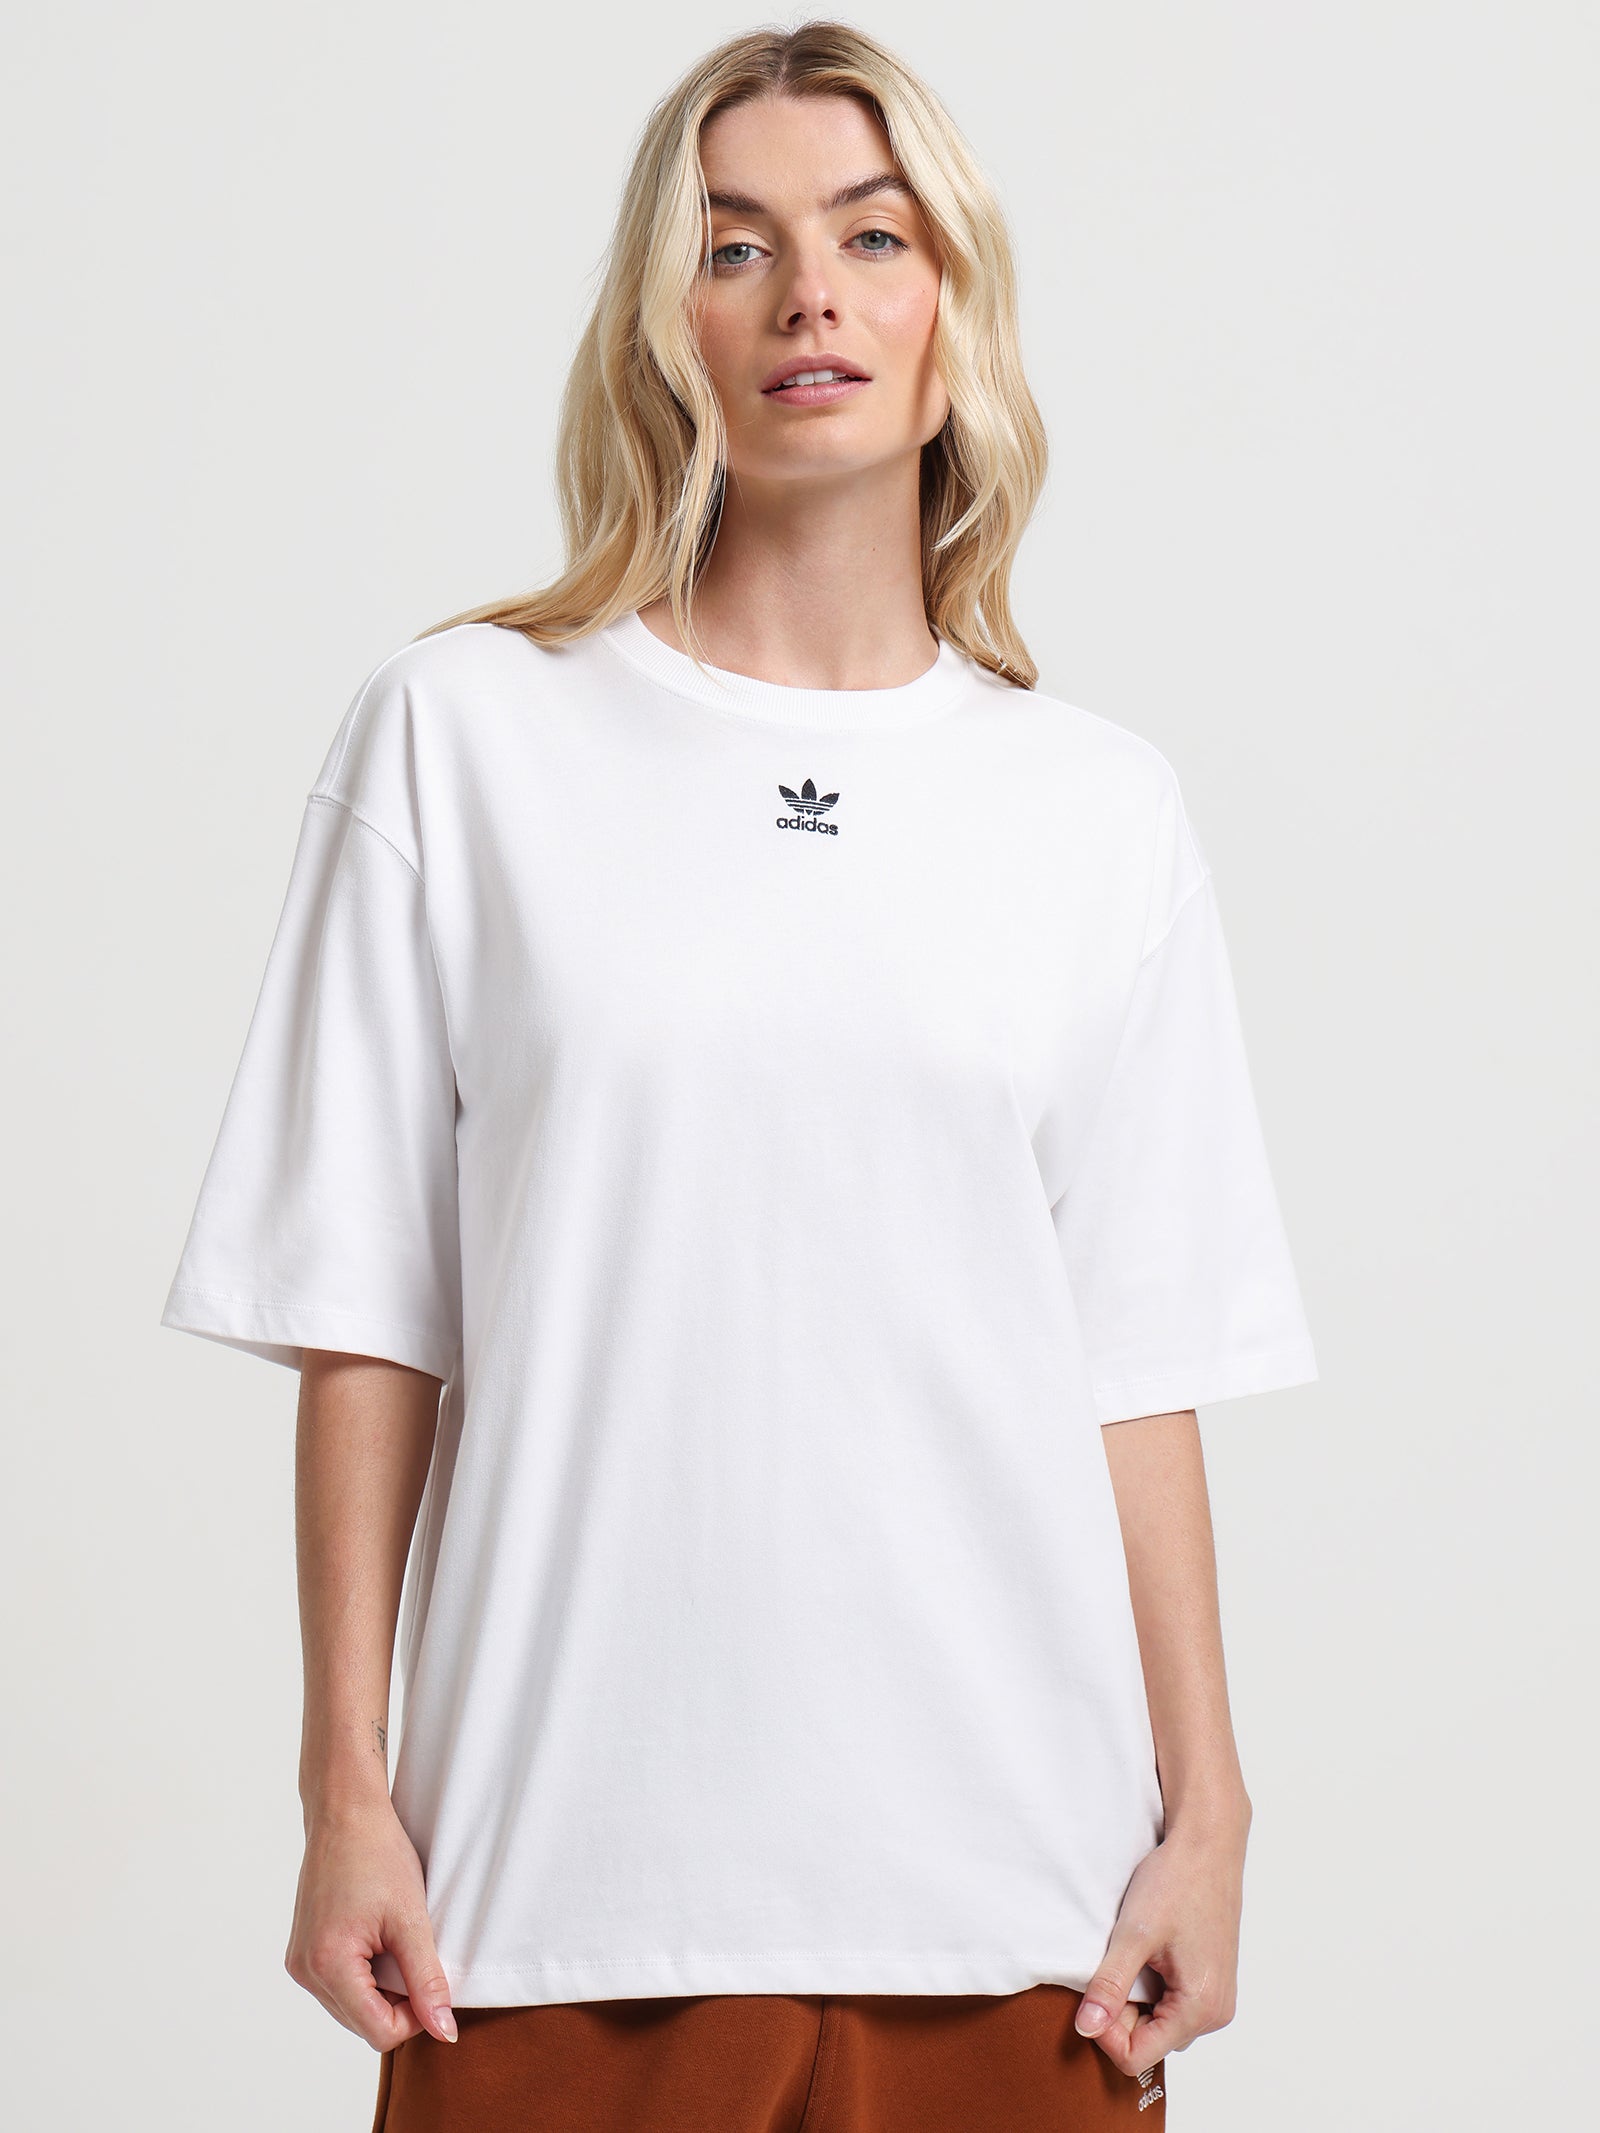 Adicolor Essentials T-Shirt in Store White Glue 